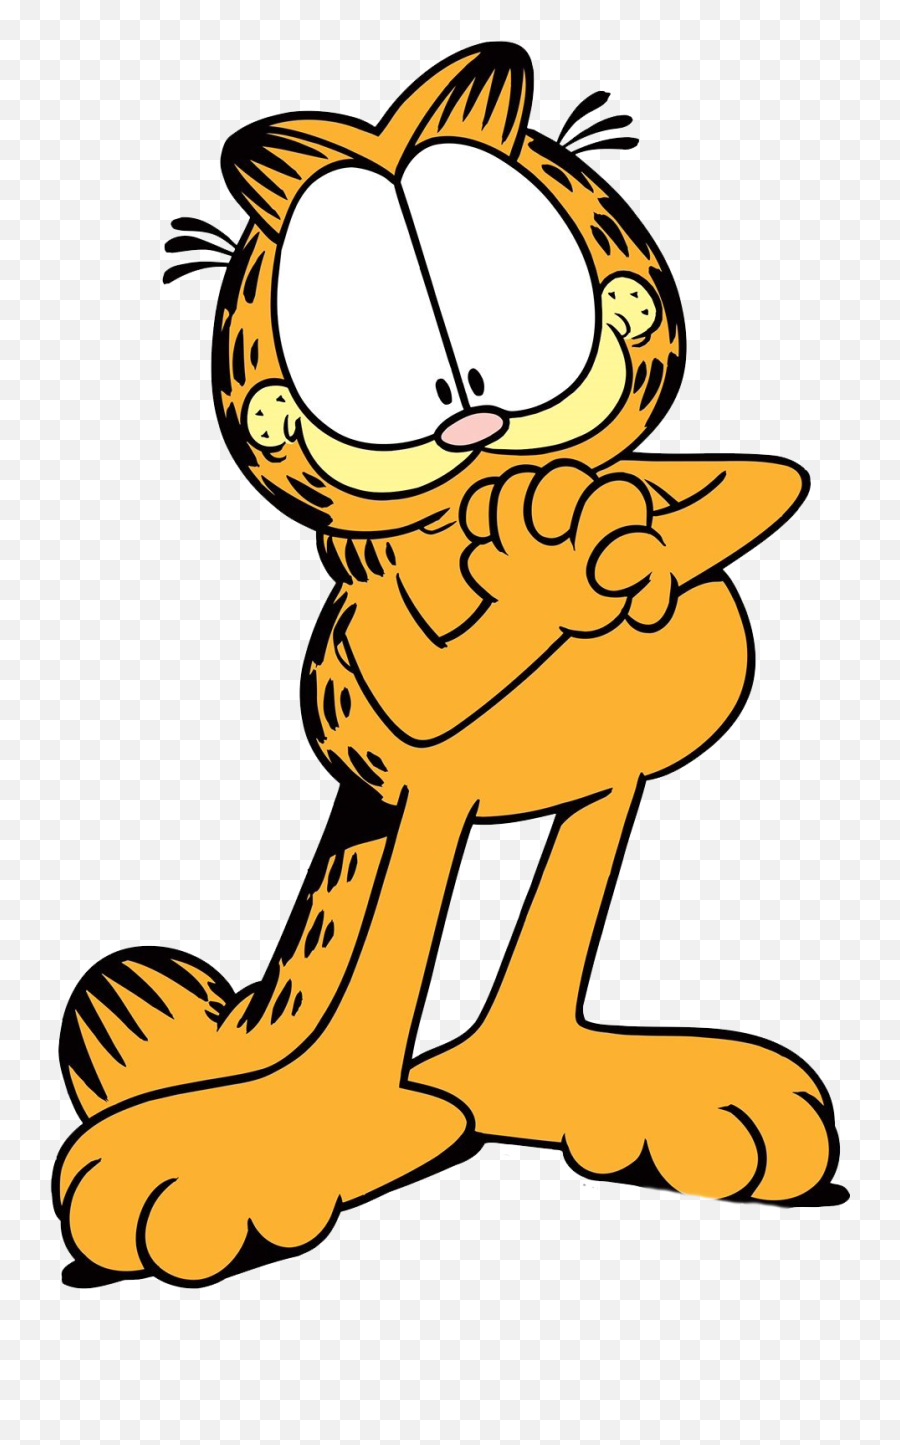 Garfield Transparent Background - Garfield Transparent Background Png,Garfield Transparent